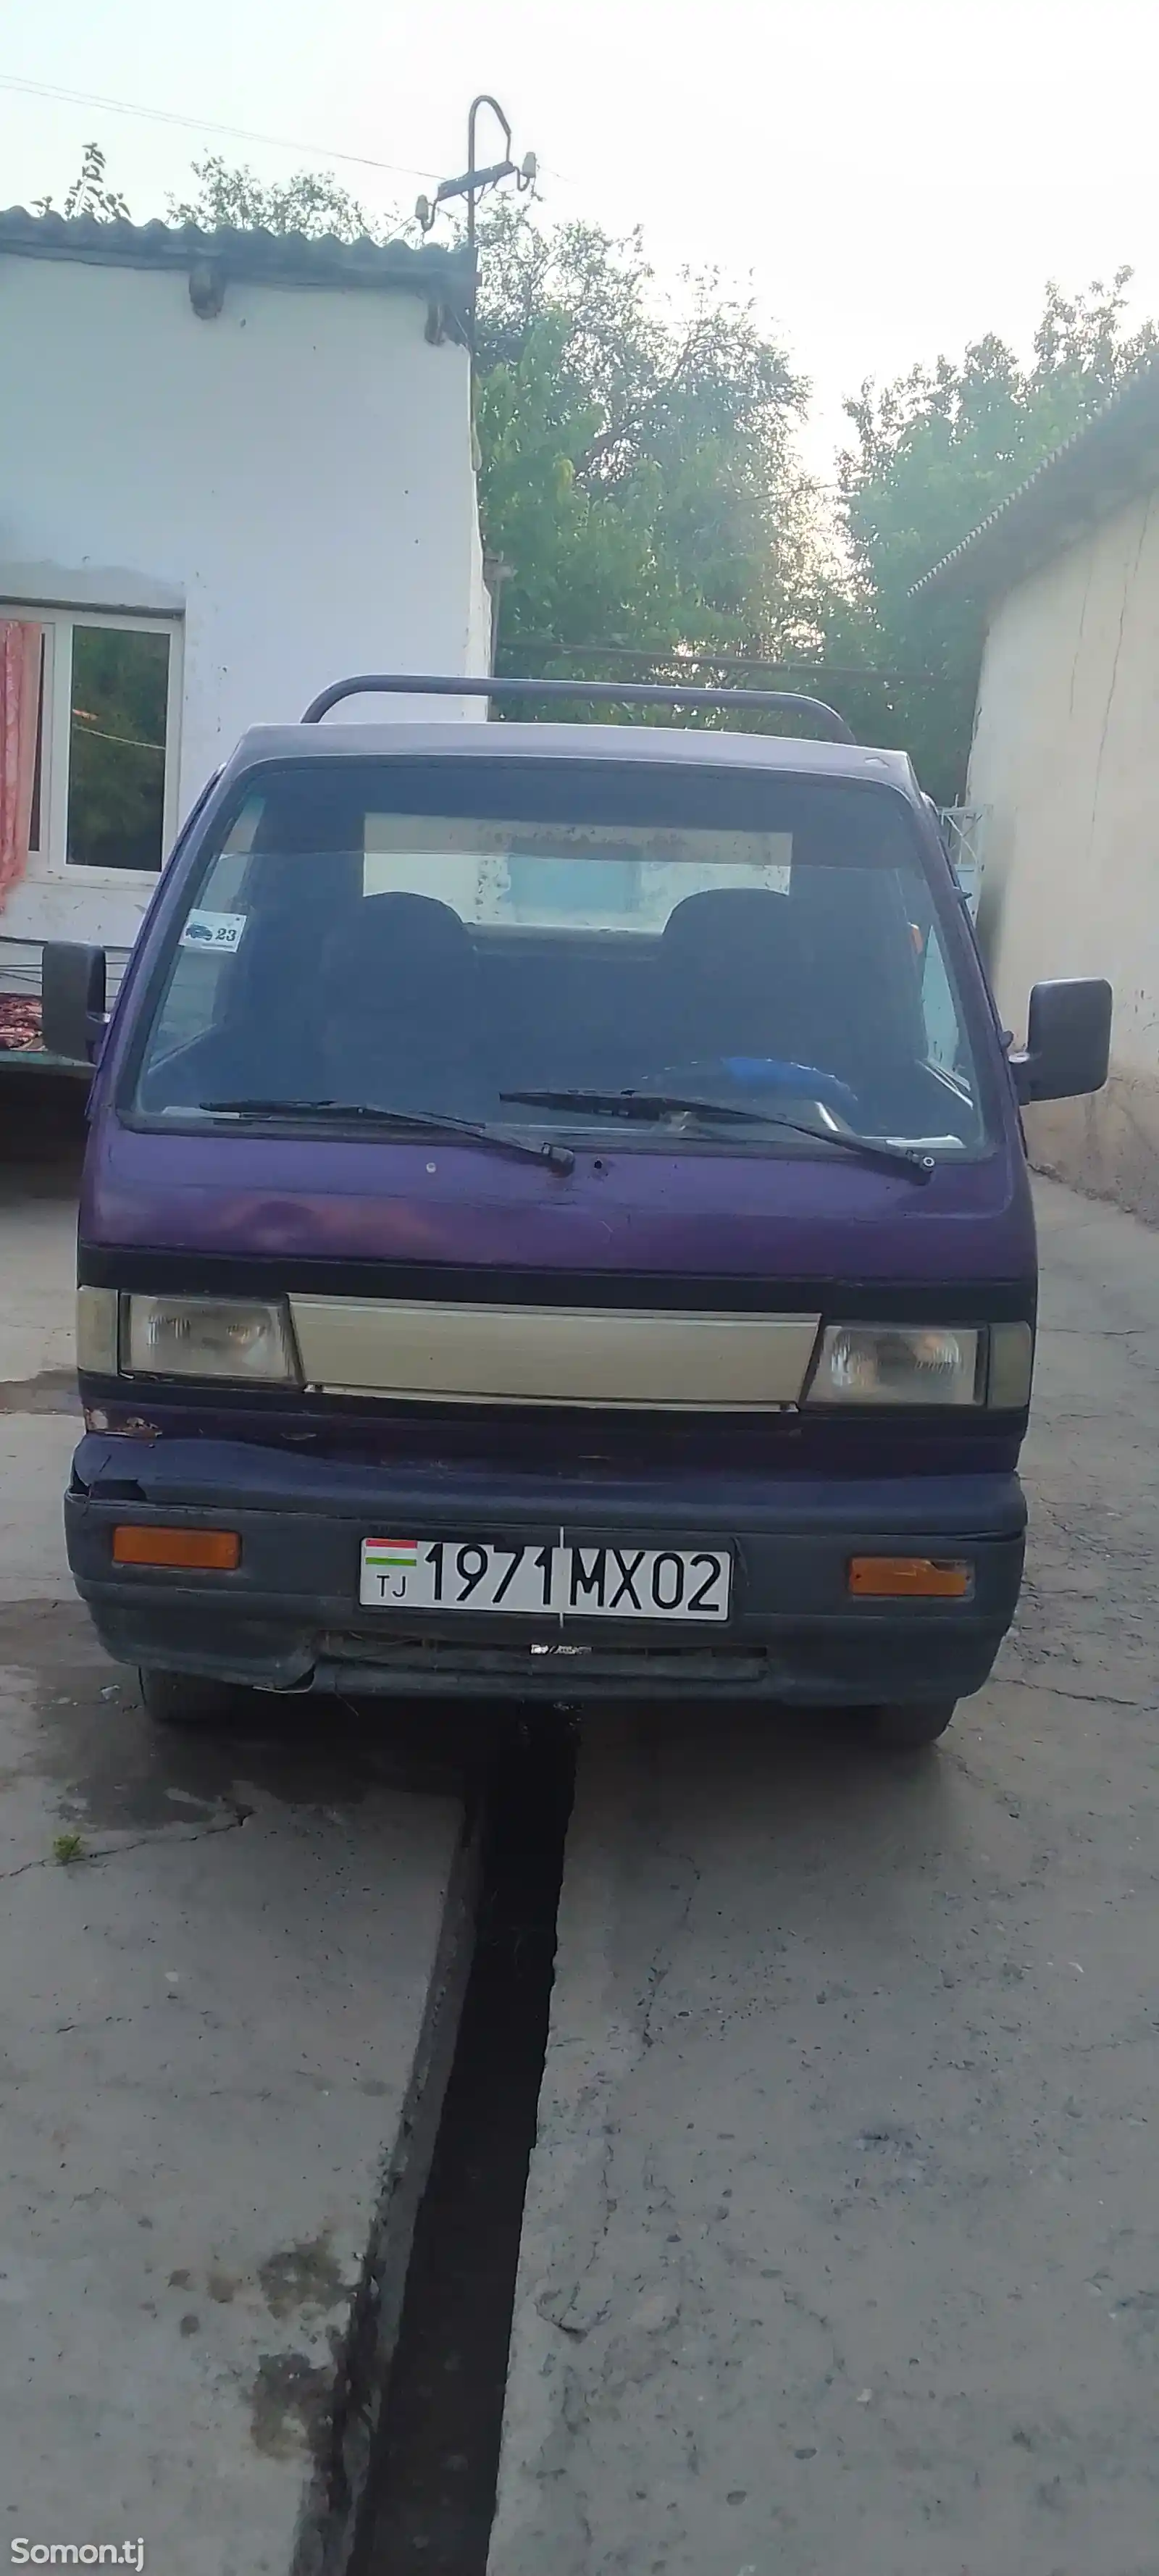 Бортовой автомобиль Daewoo Labo, 1996-1